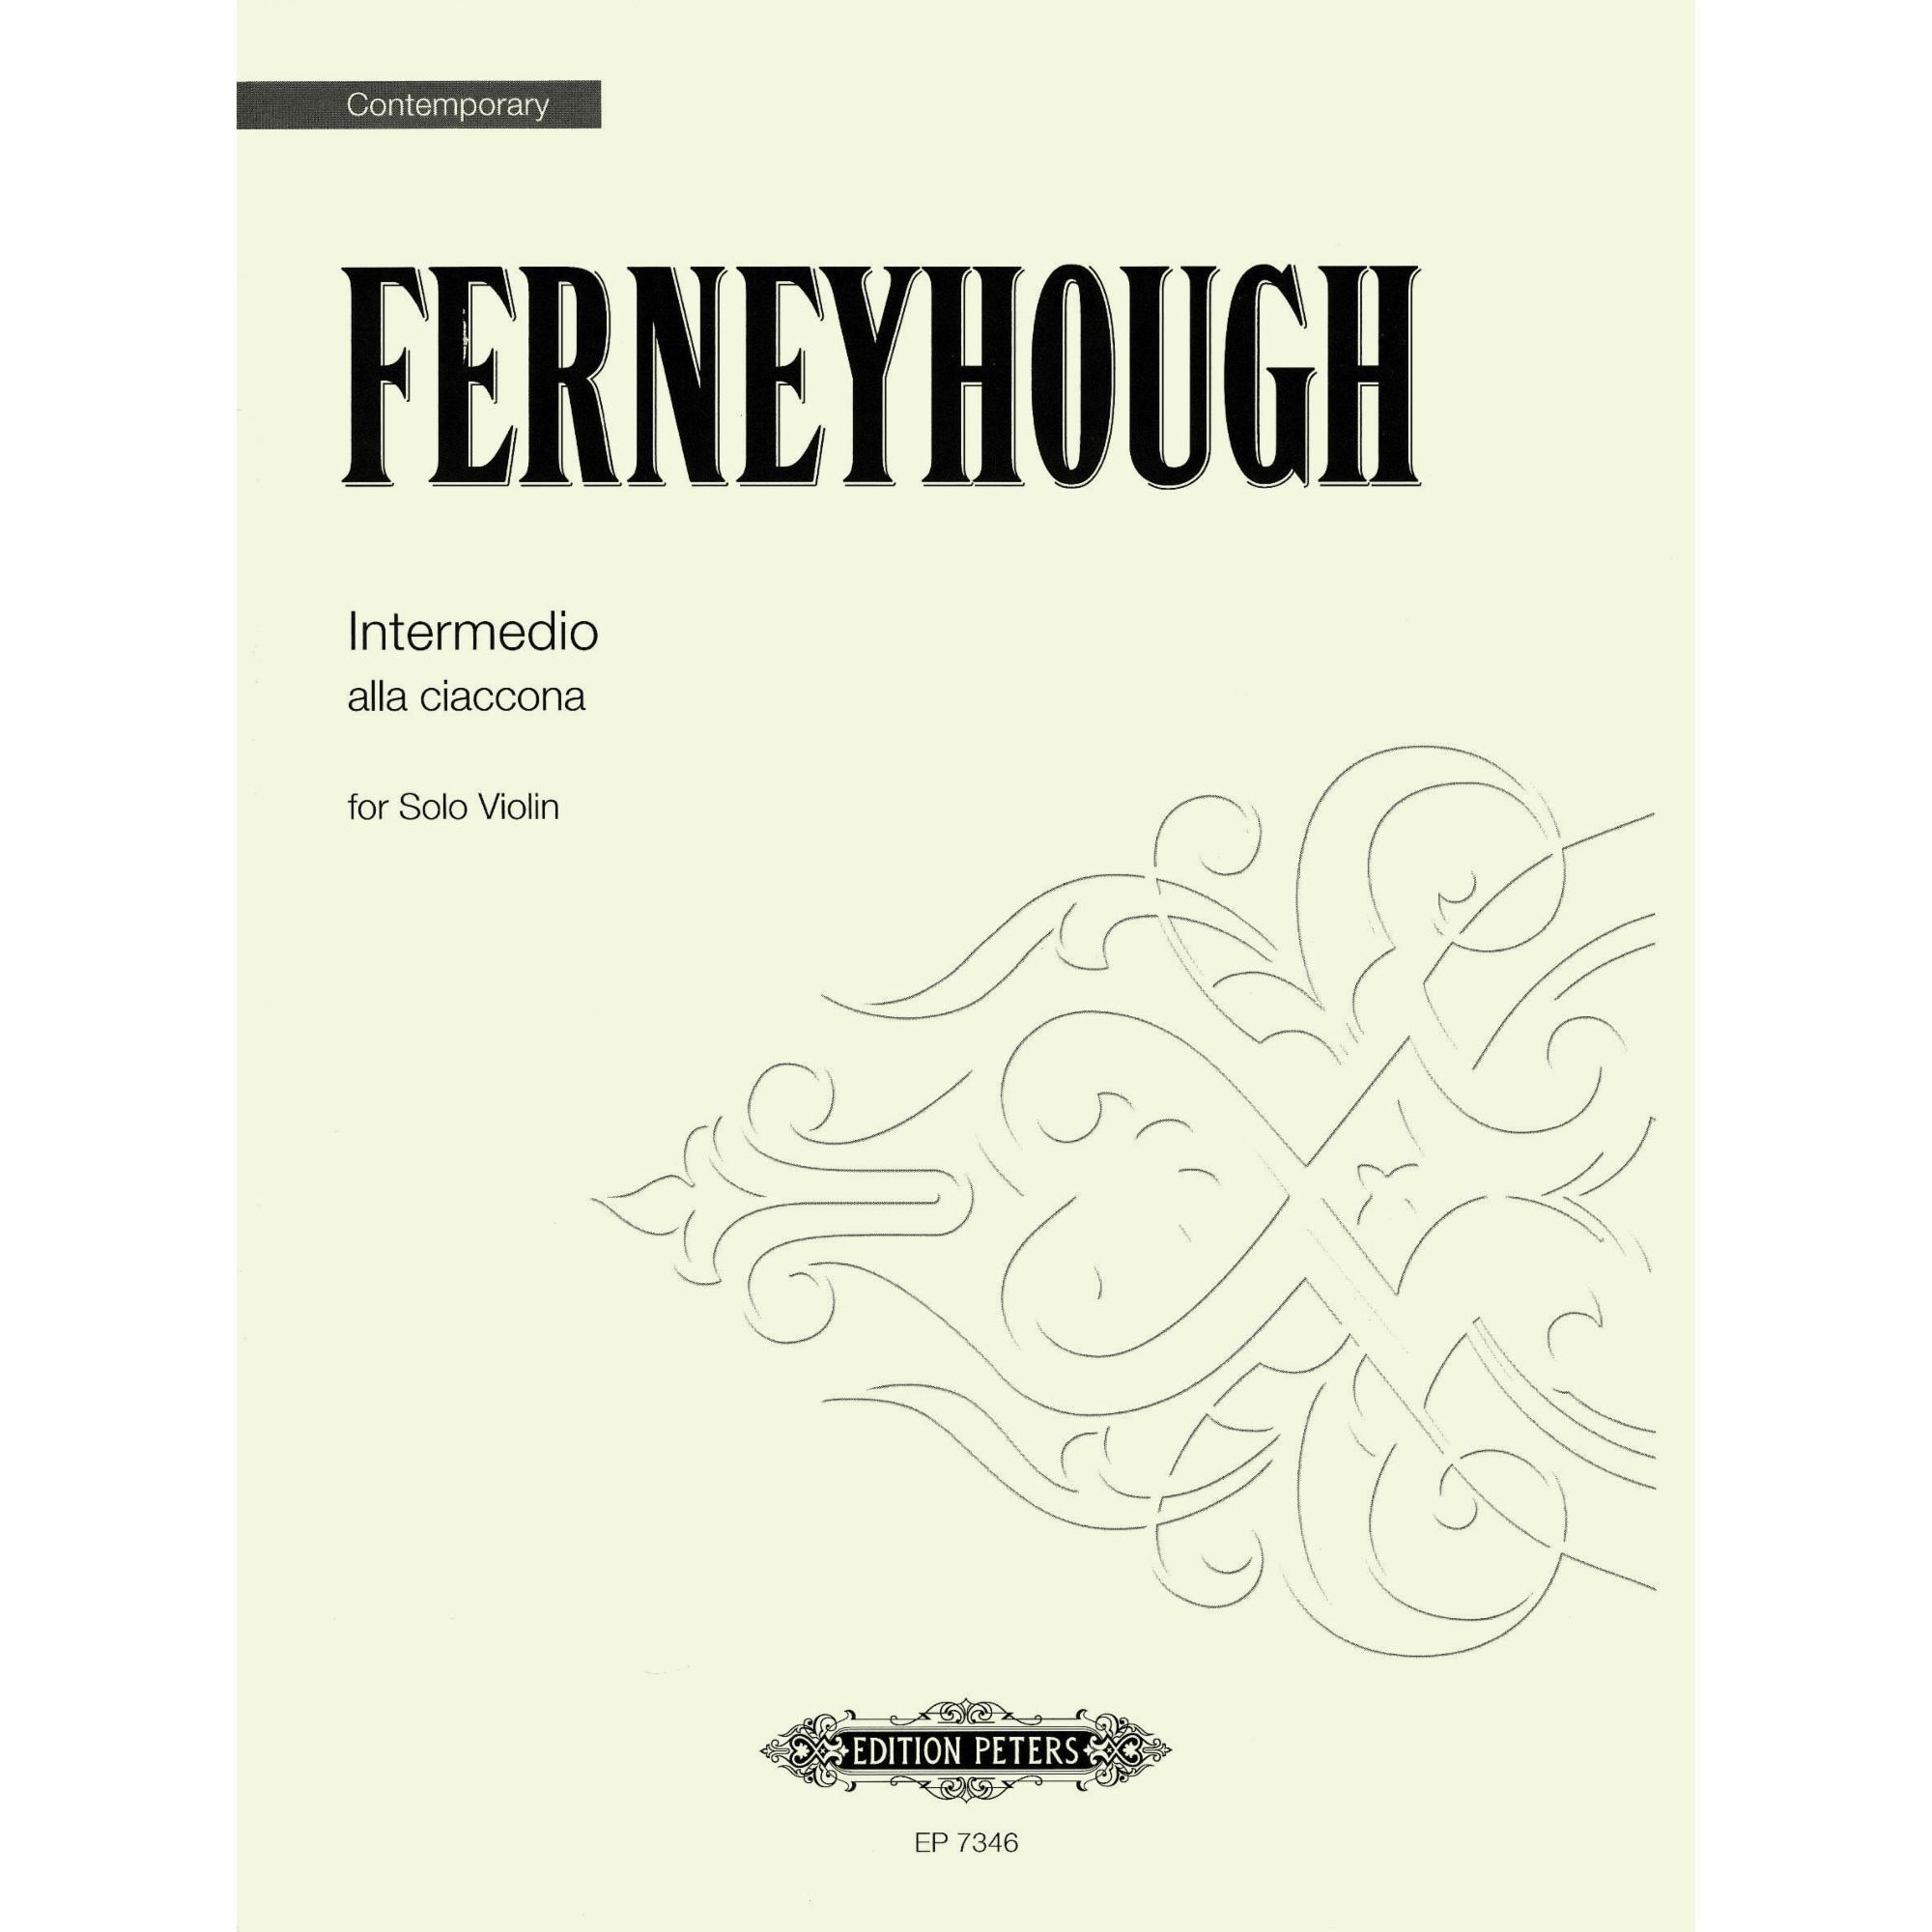 Ferneyhough -- Intermedio alla Ciaccona for Solo Violin